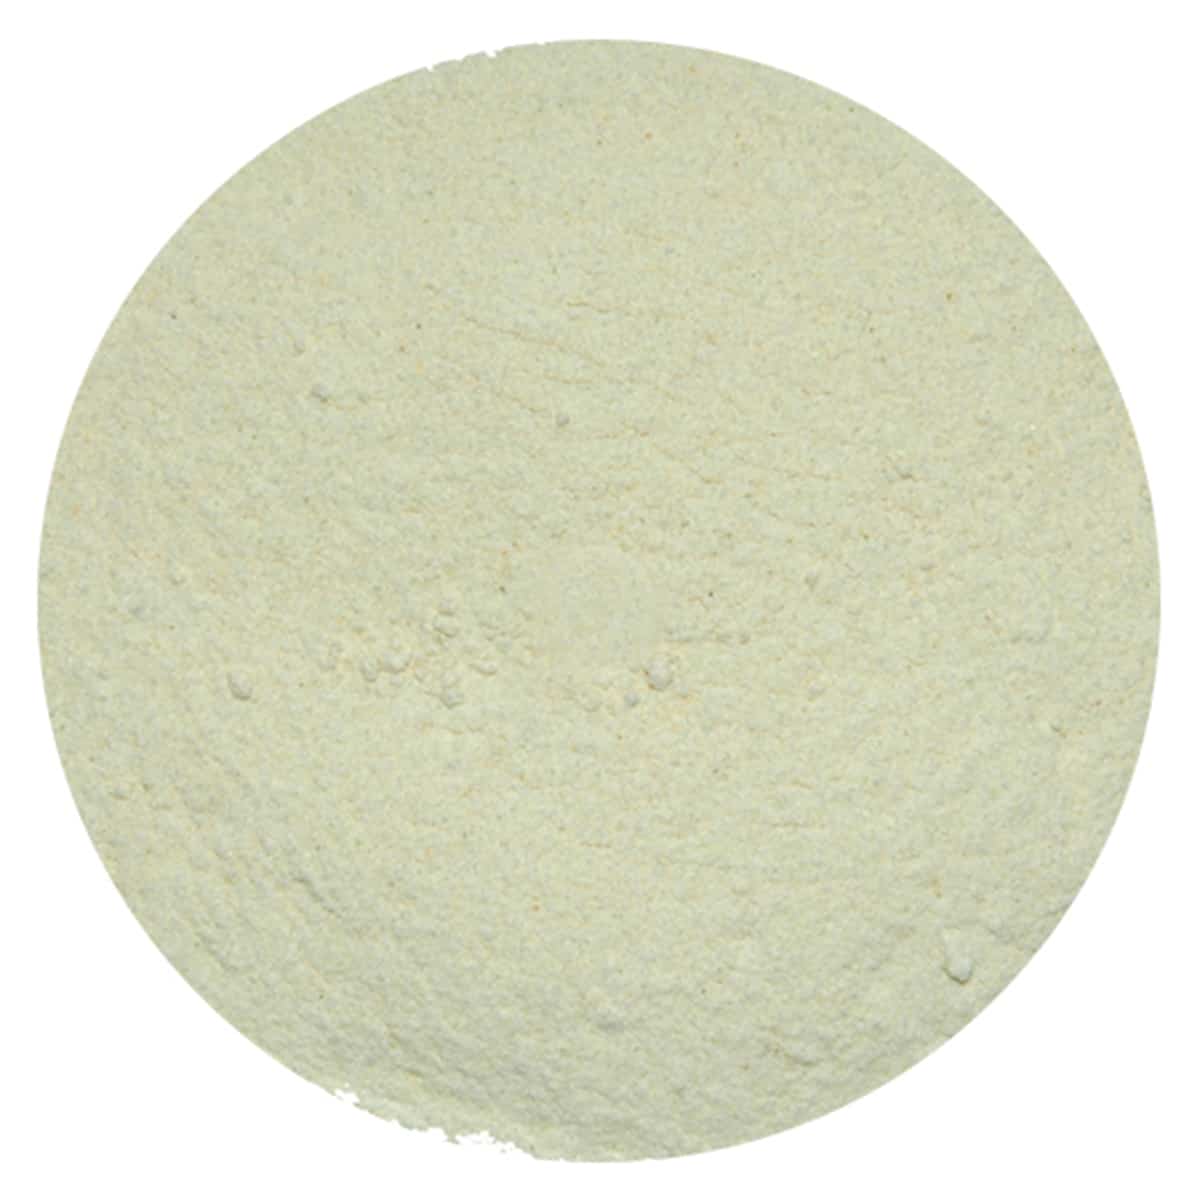 Buy IAG Foods Onion Powder - 1 kg